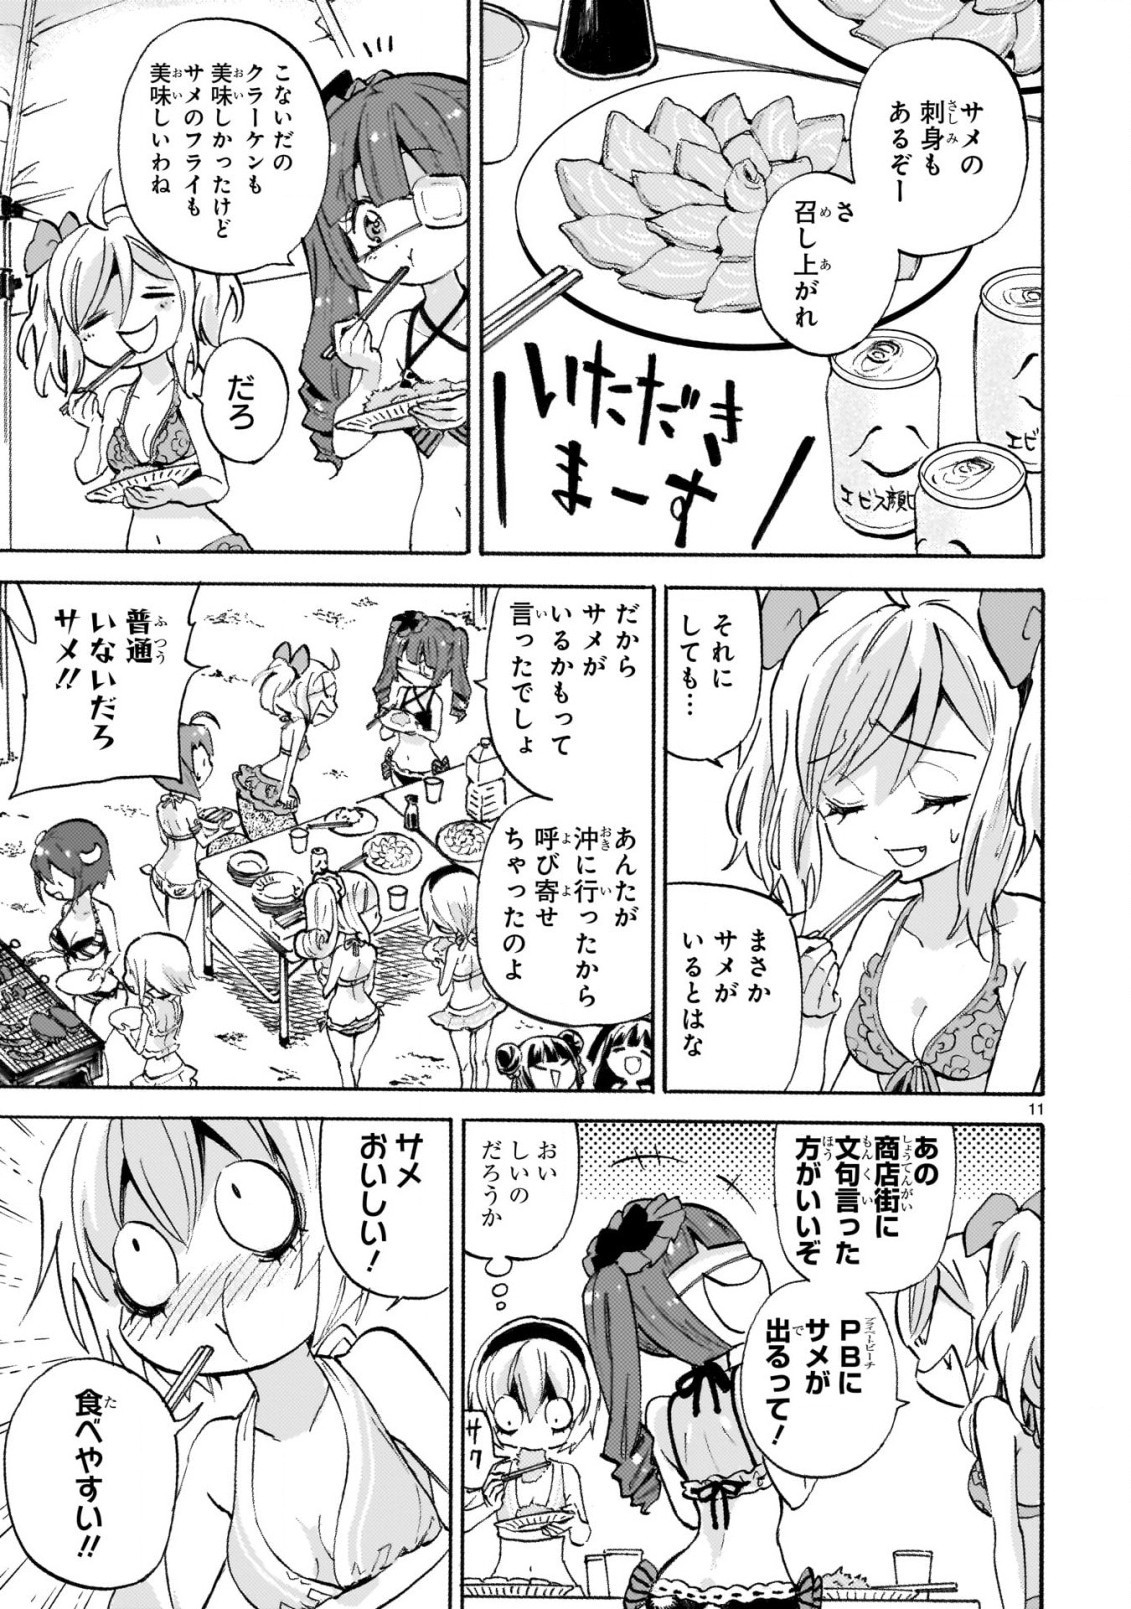 Jashin-chan Dropkick - Chapter 239-2 - Page 11